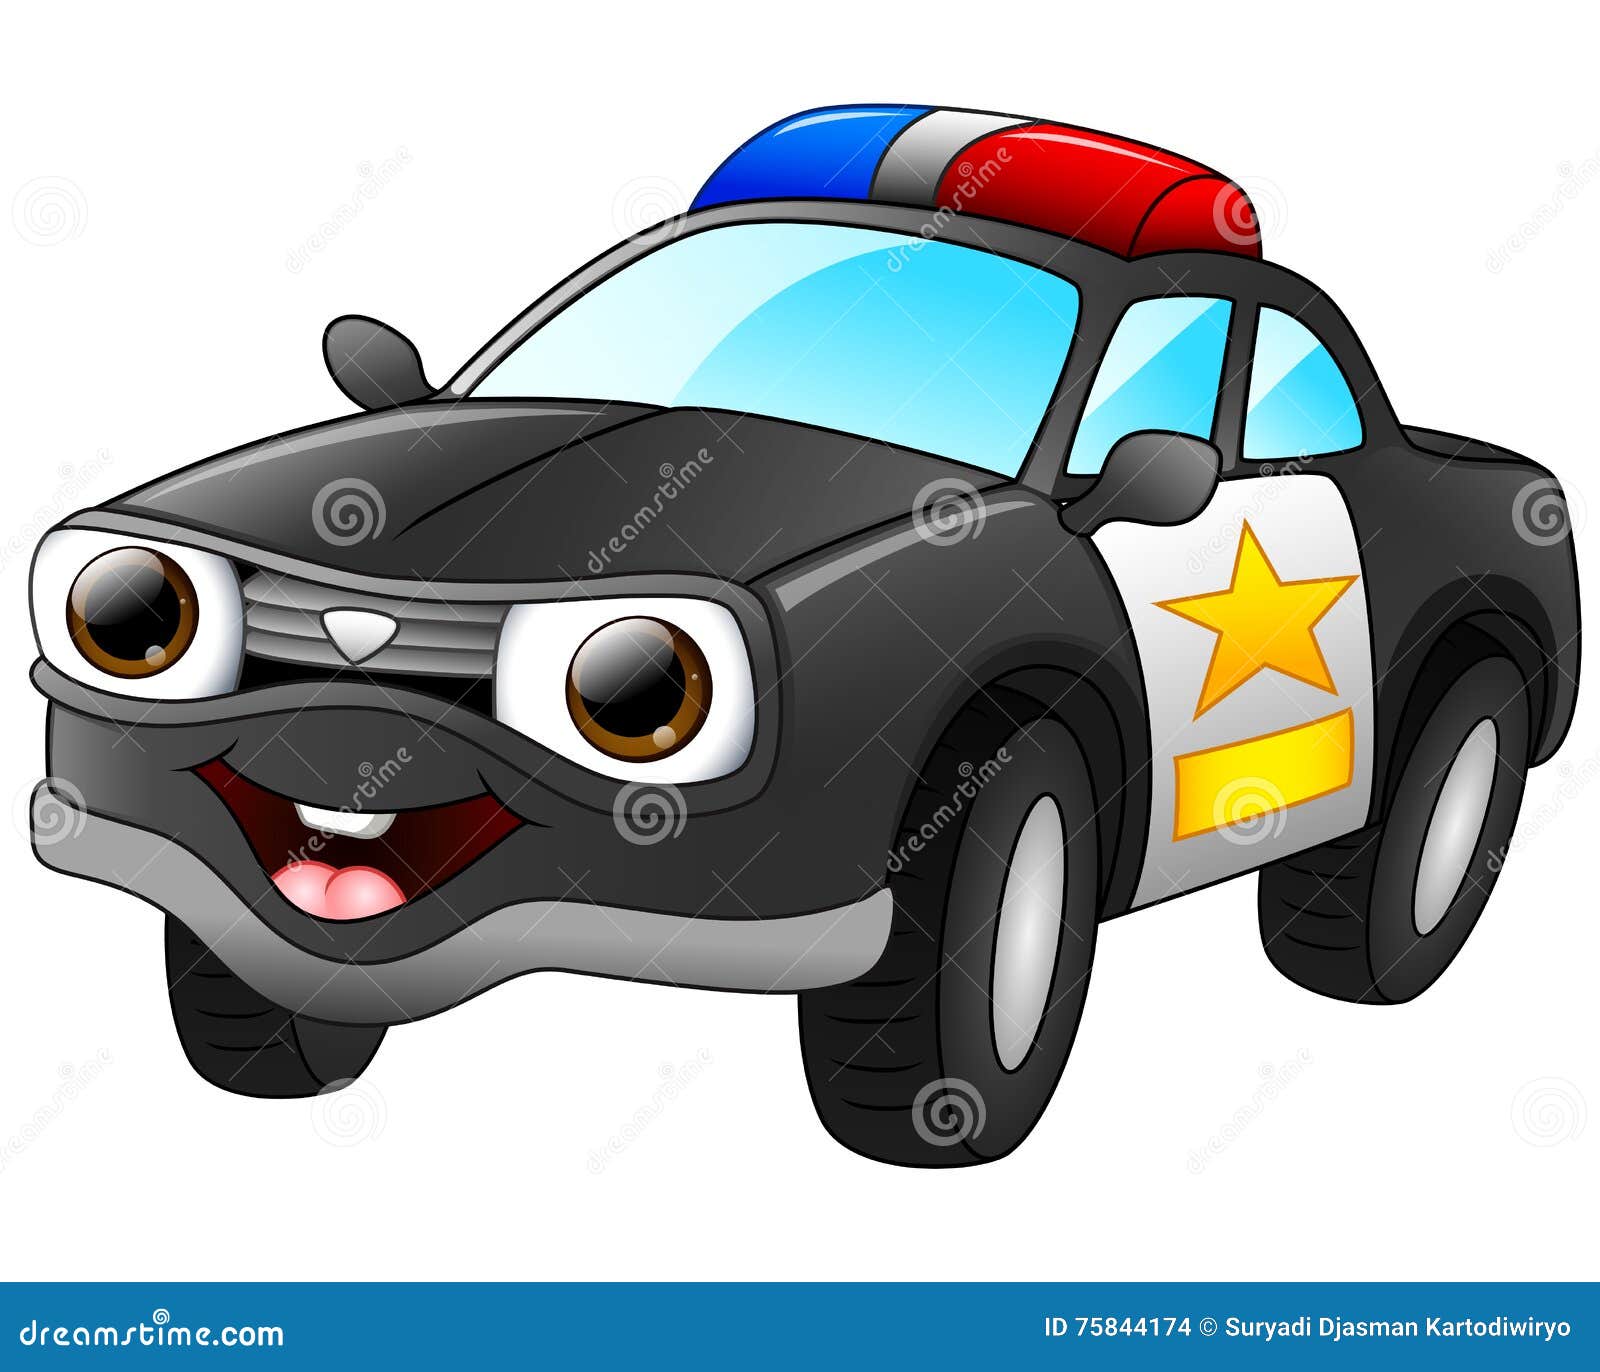 Pack de 2 desenhos animados R / c carro de polícia e controle de